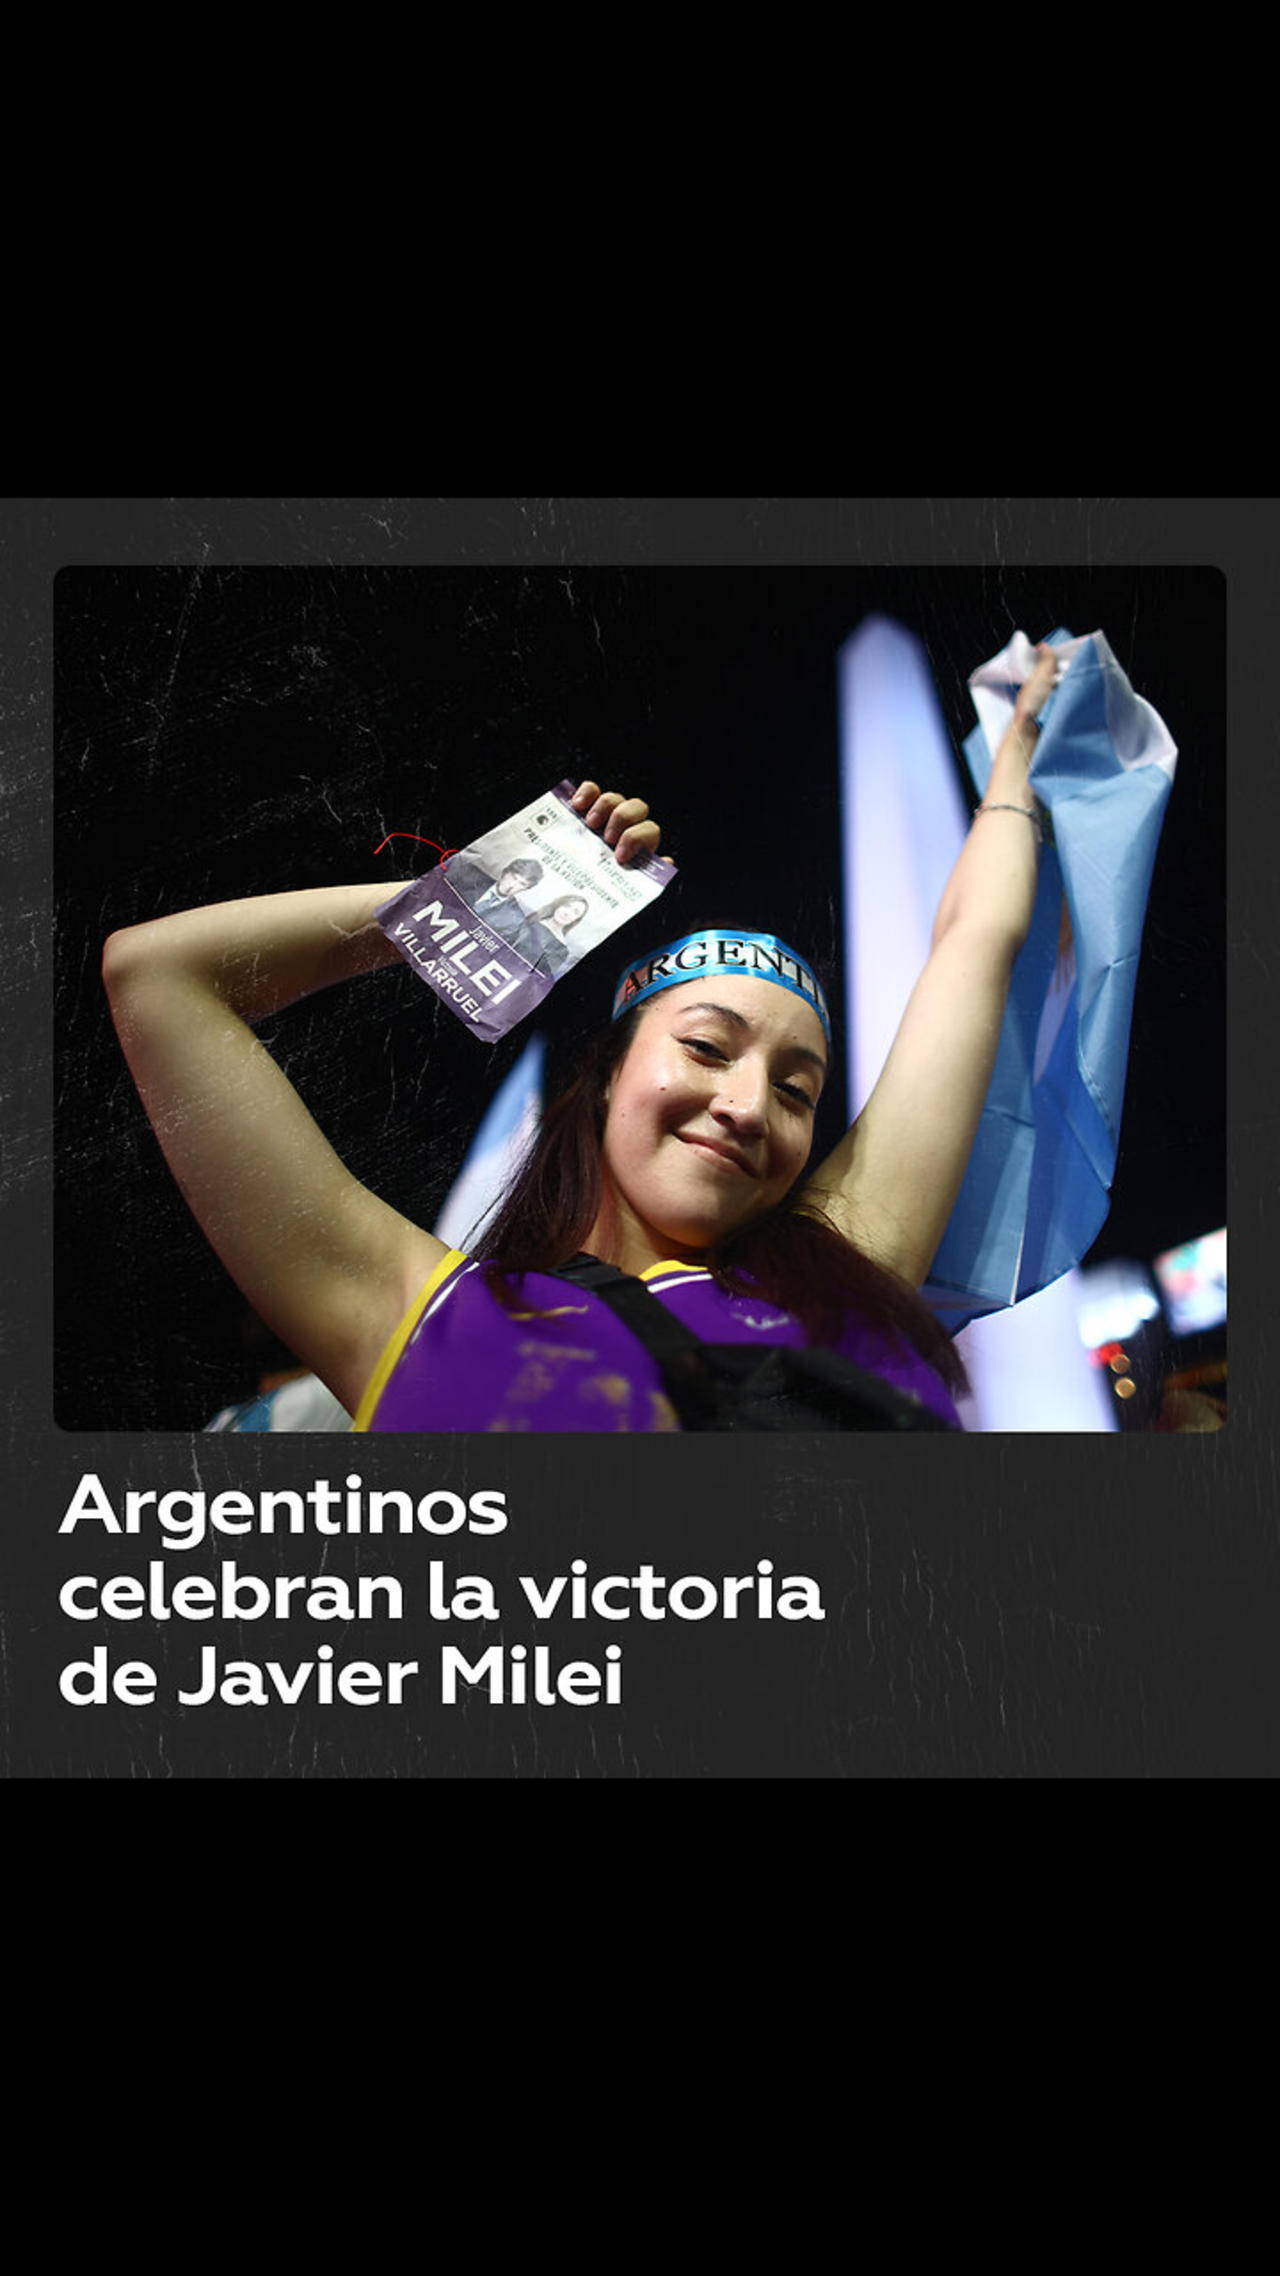 ¿Cómo reaccionaron los argentinos ante la victoria de Javier Milei?